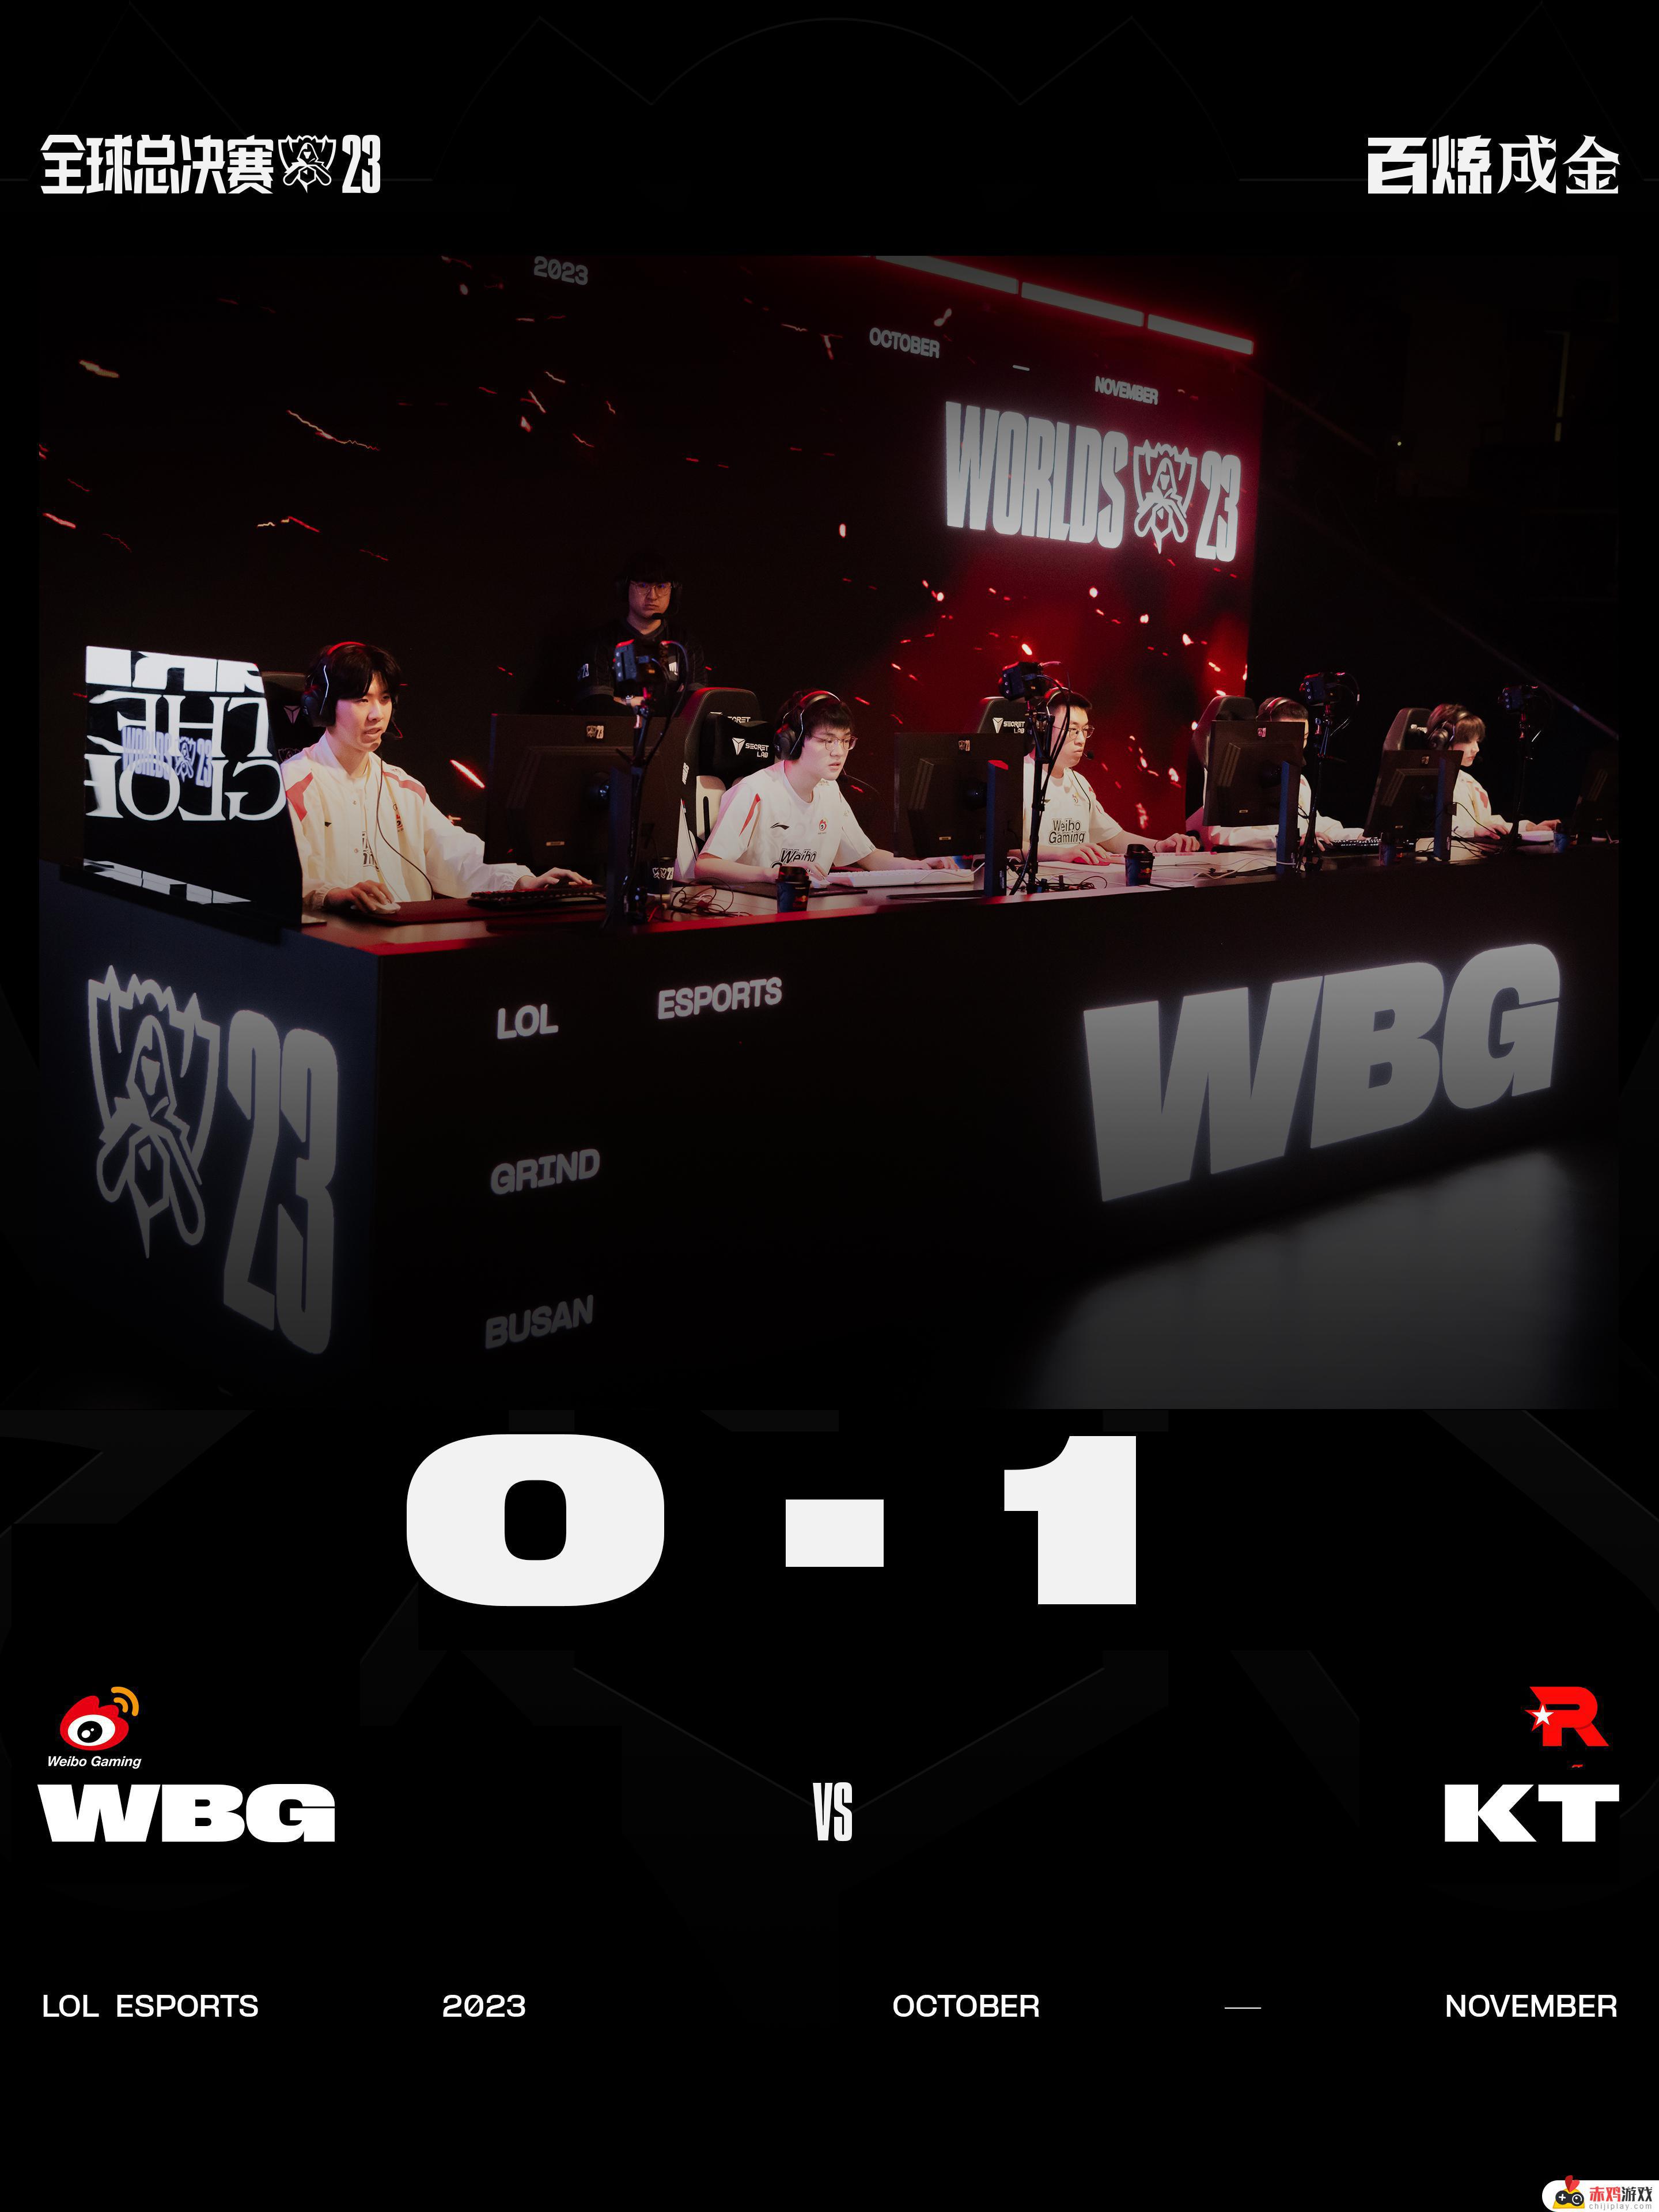 英雄联盟WBG 0-1 KT，KT获得比赛胜利——WBG遭遇对手强势反击，KT险胜一局